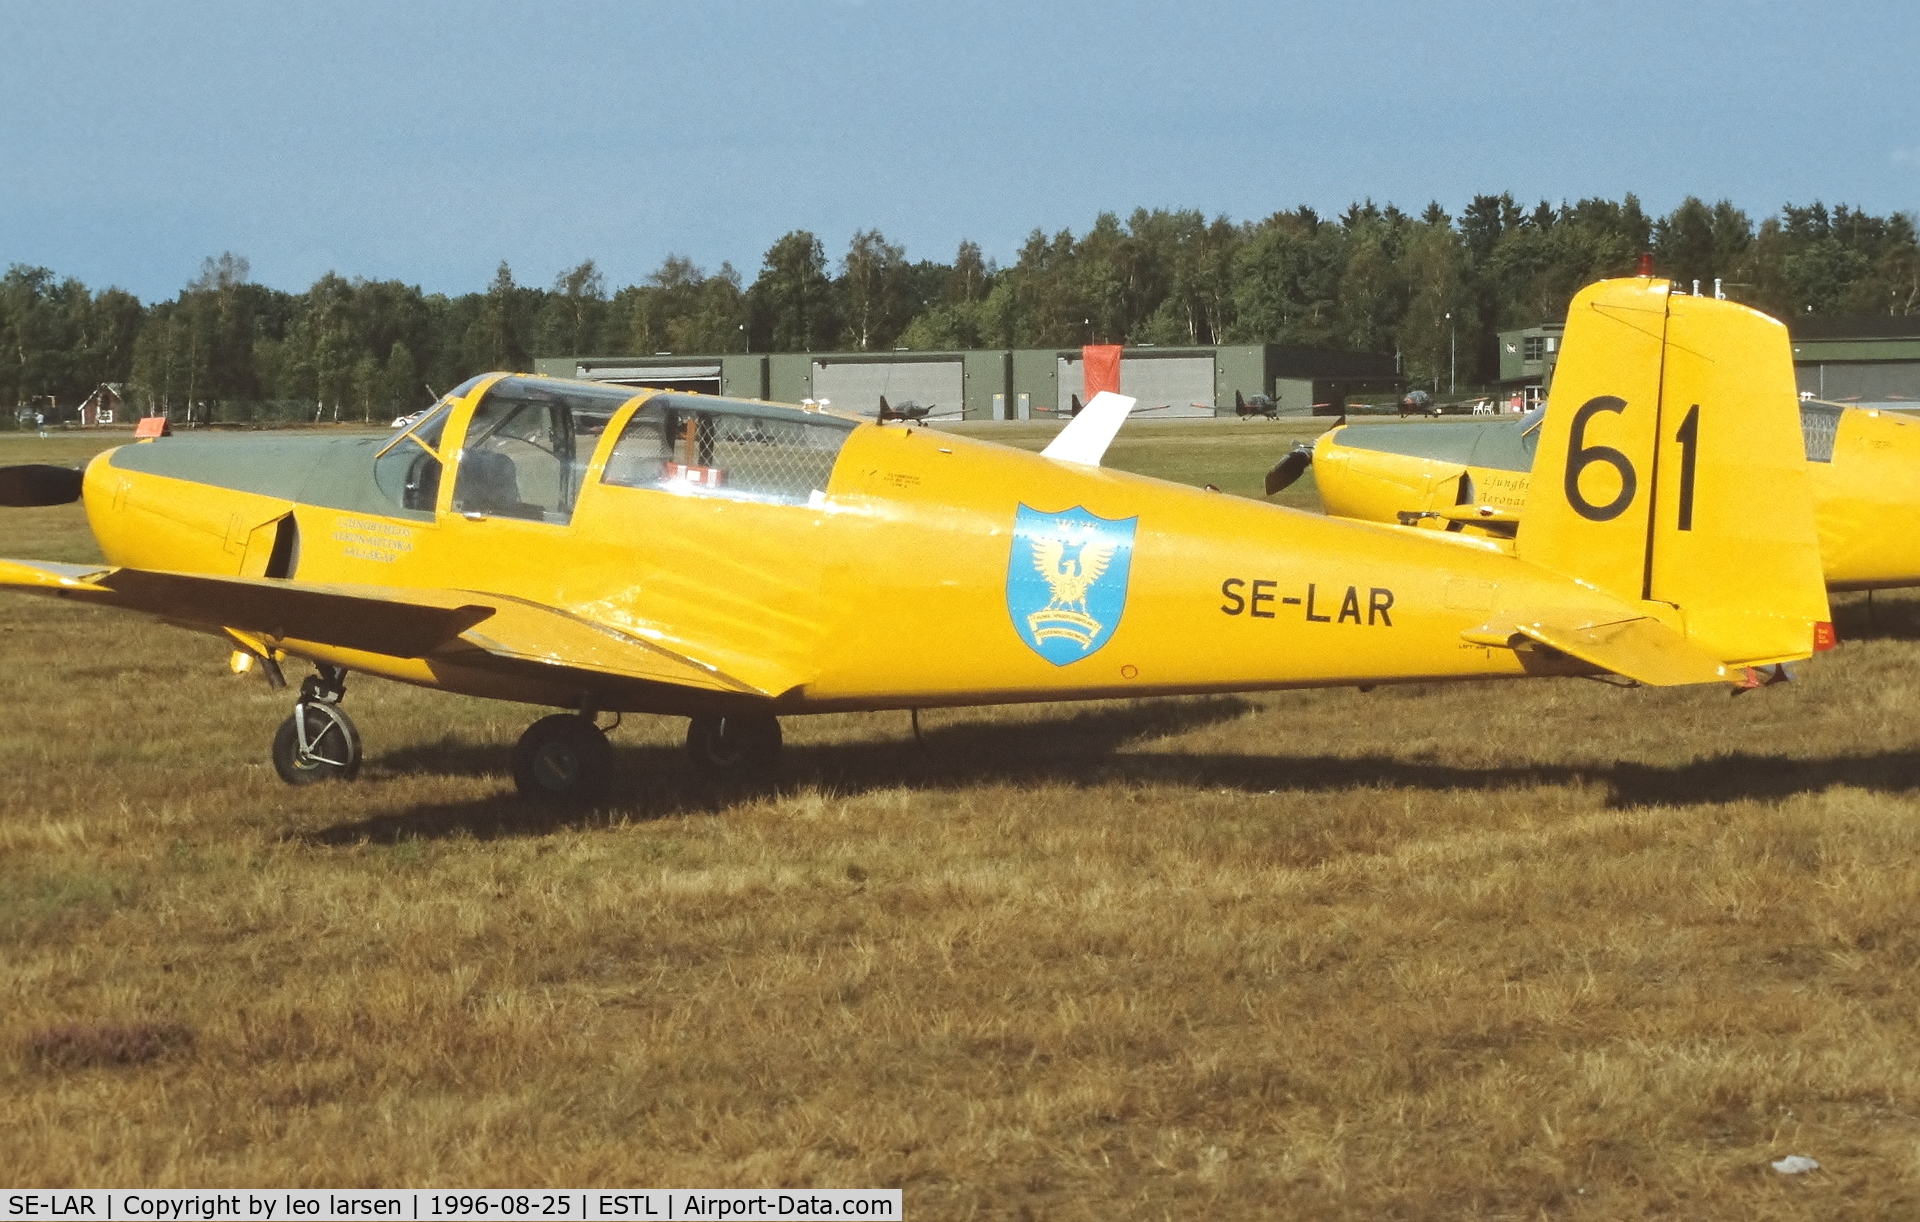 SE-LAR, 1953 Saab 91B Safir C/N 91-270, Ljungbyhed F.5 Air Base 25.8.1996